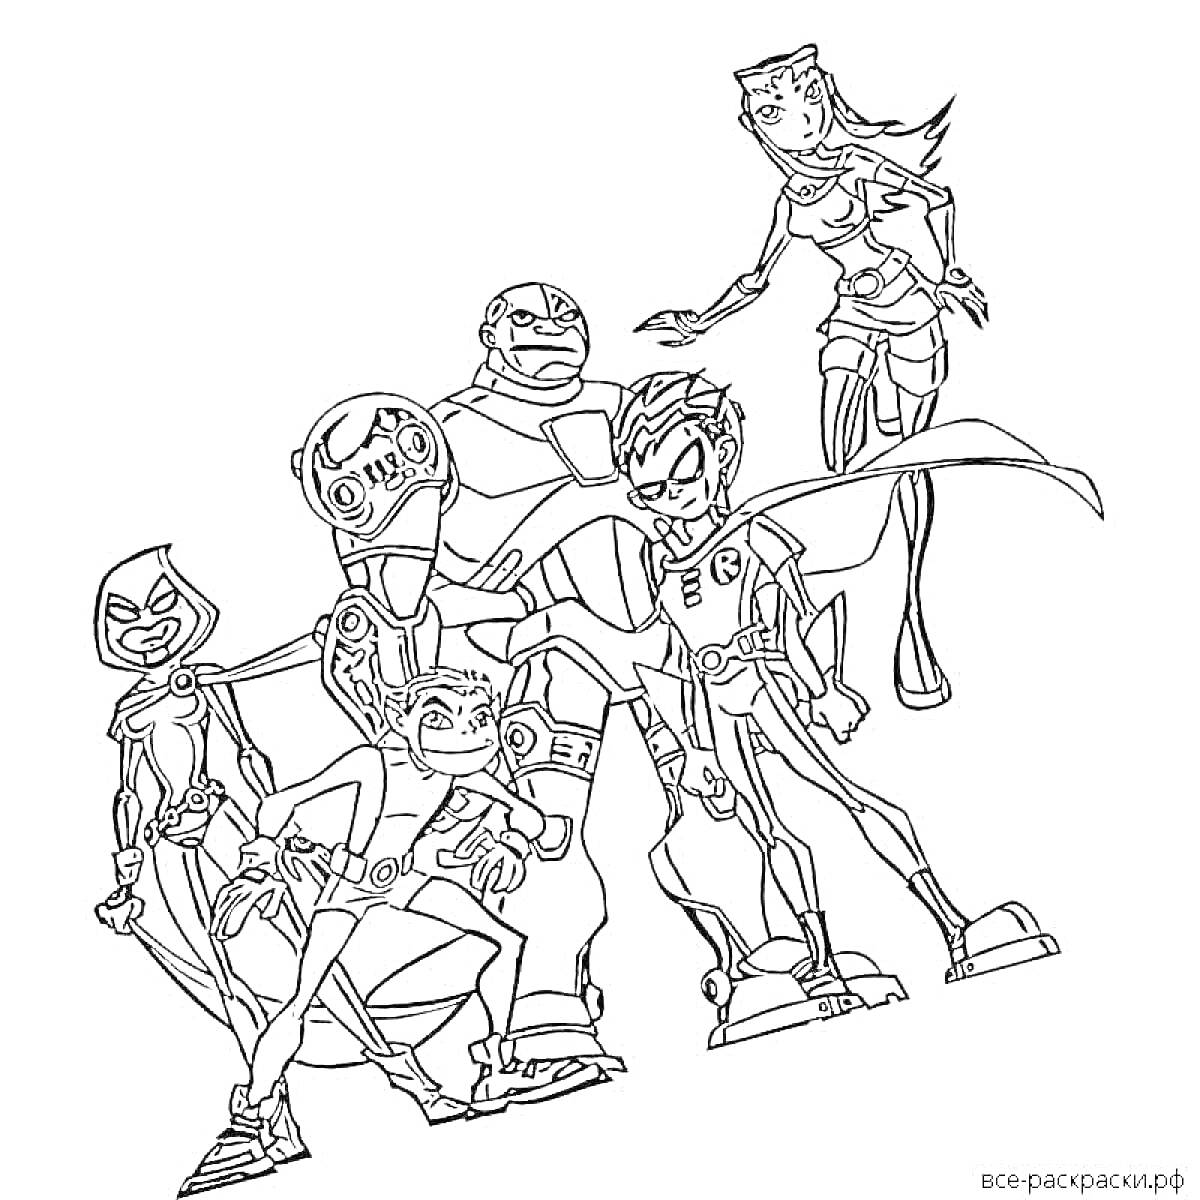 Раскраска Команда Петроникс - группа супергероев в костюмах, стоят вместе